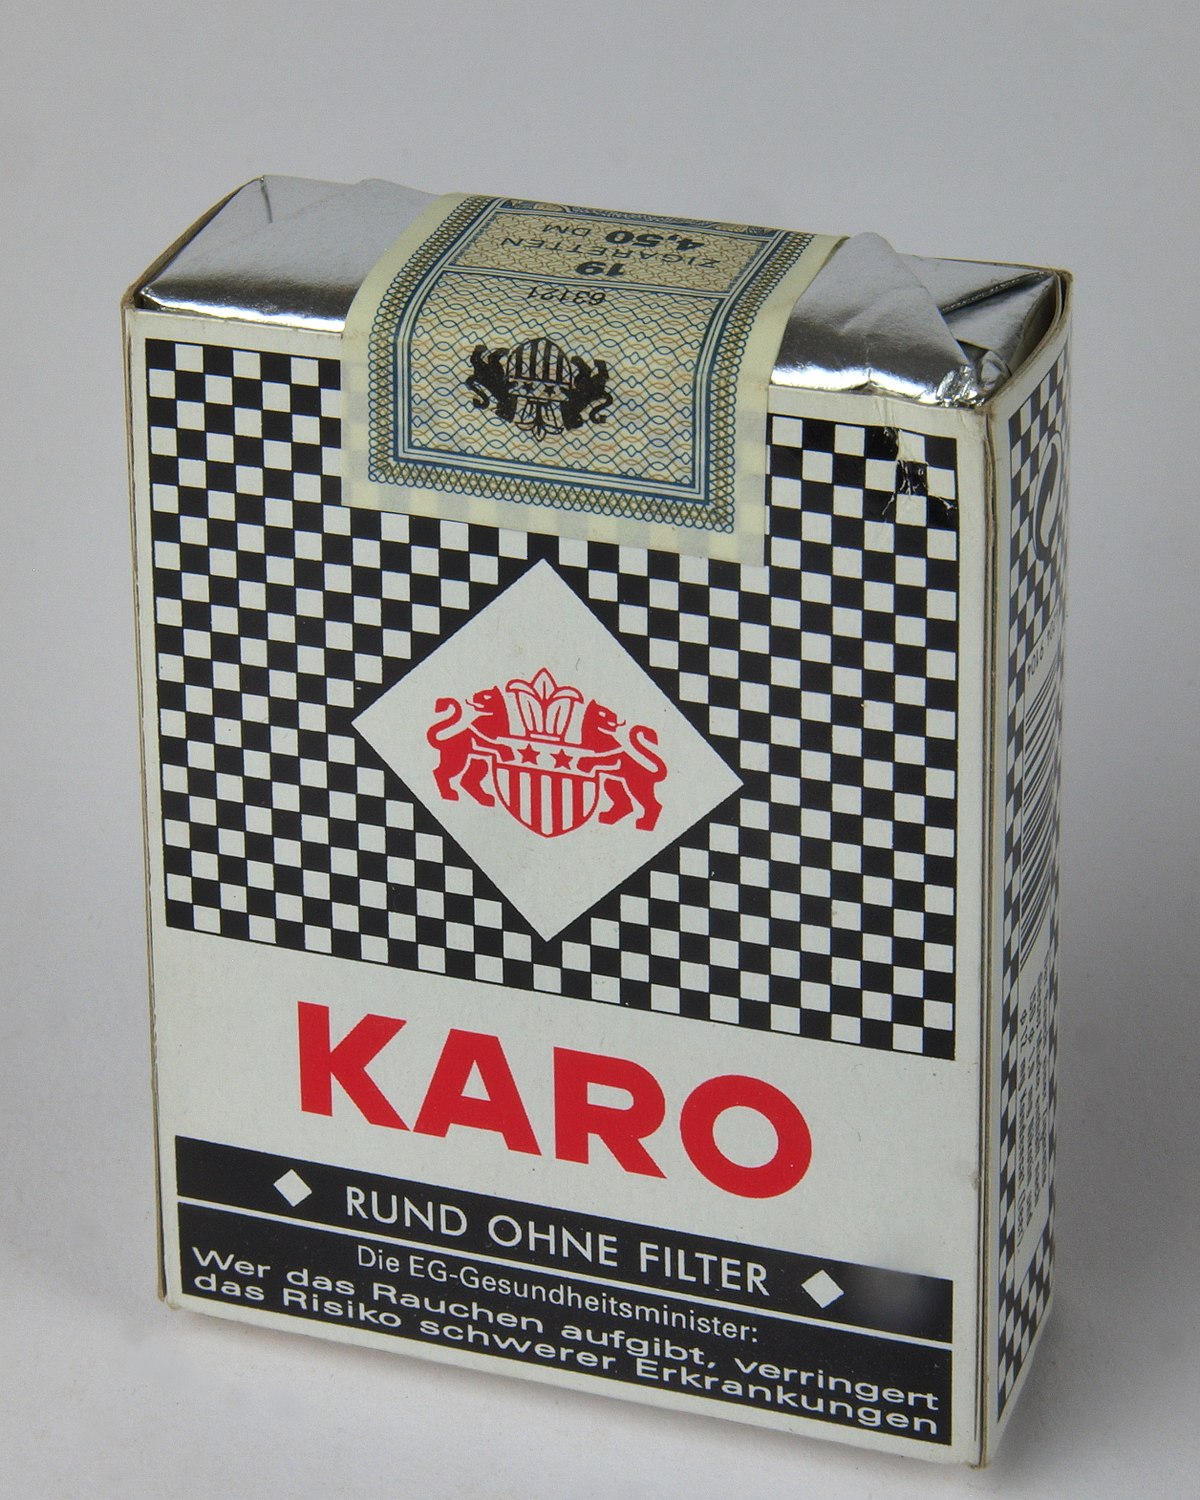 Karo (Zigarettenmarke) – Wikipedia